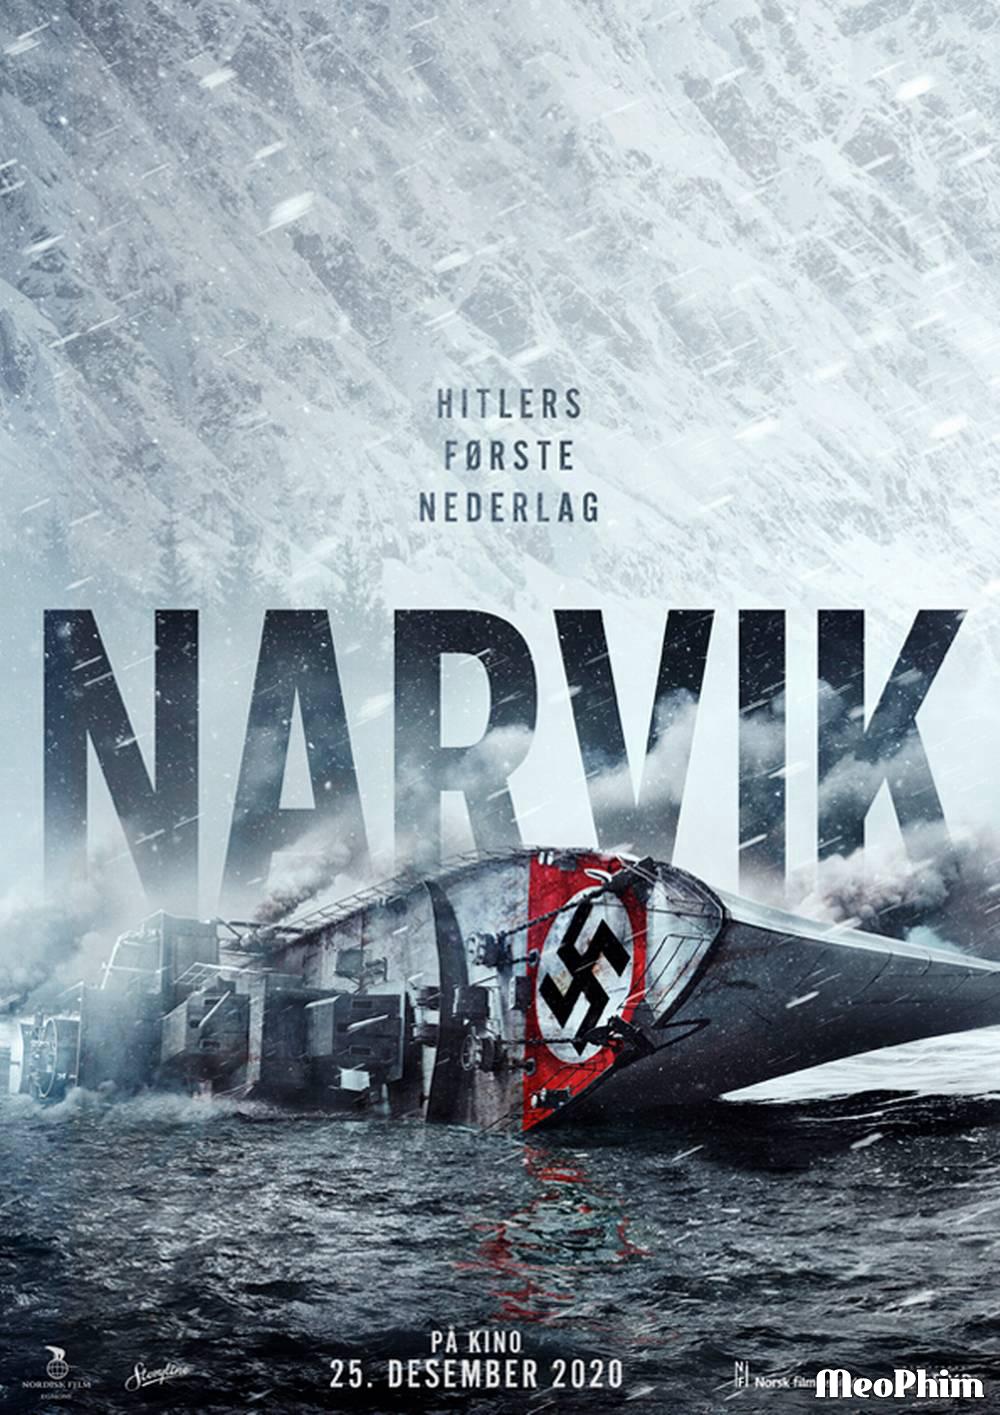 Narvik - Narvik (2022)